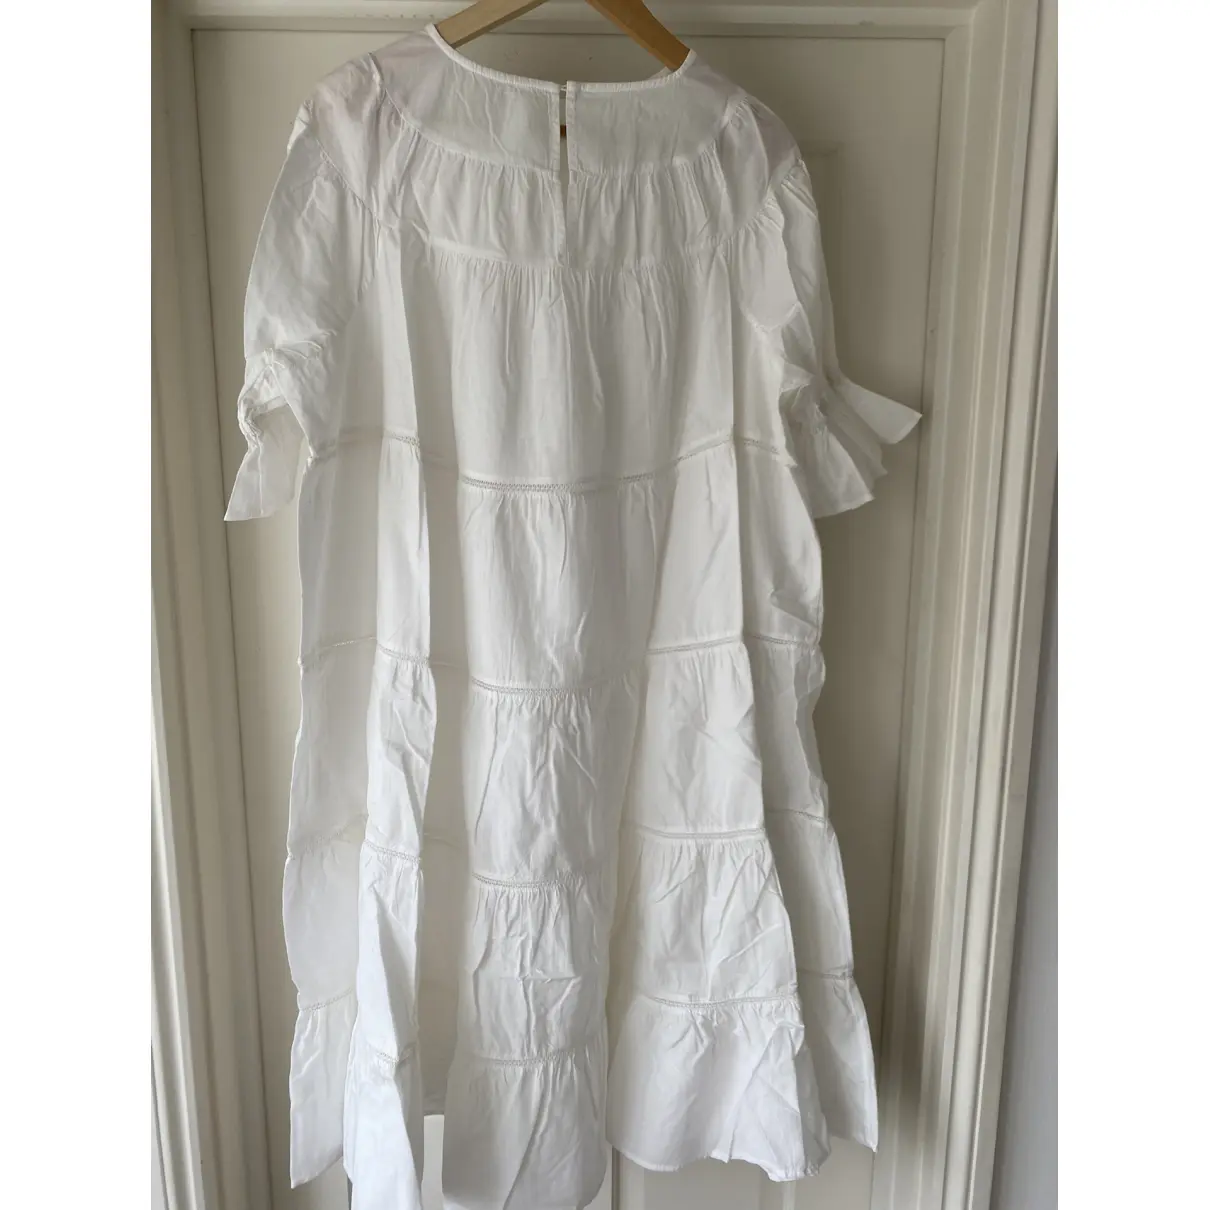 Buy Merlette Mid-length dress online